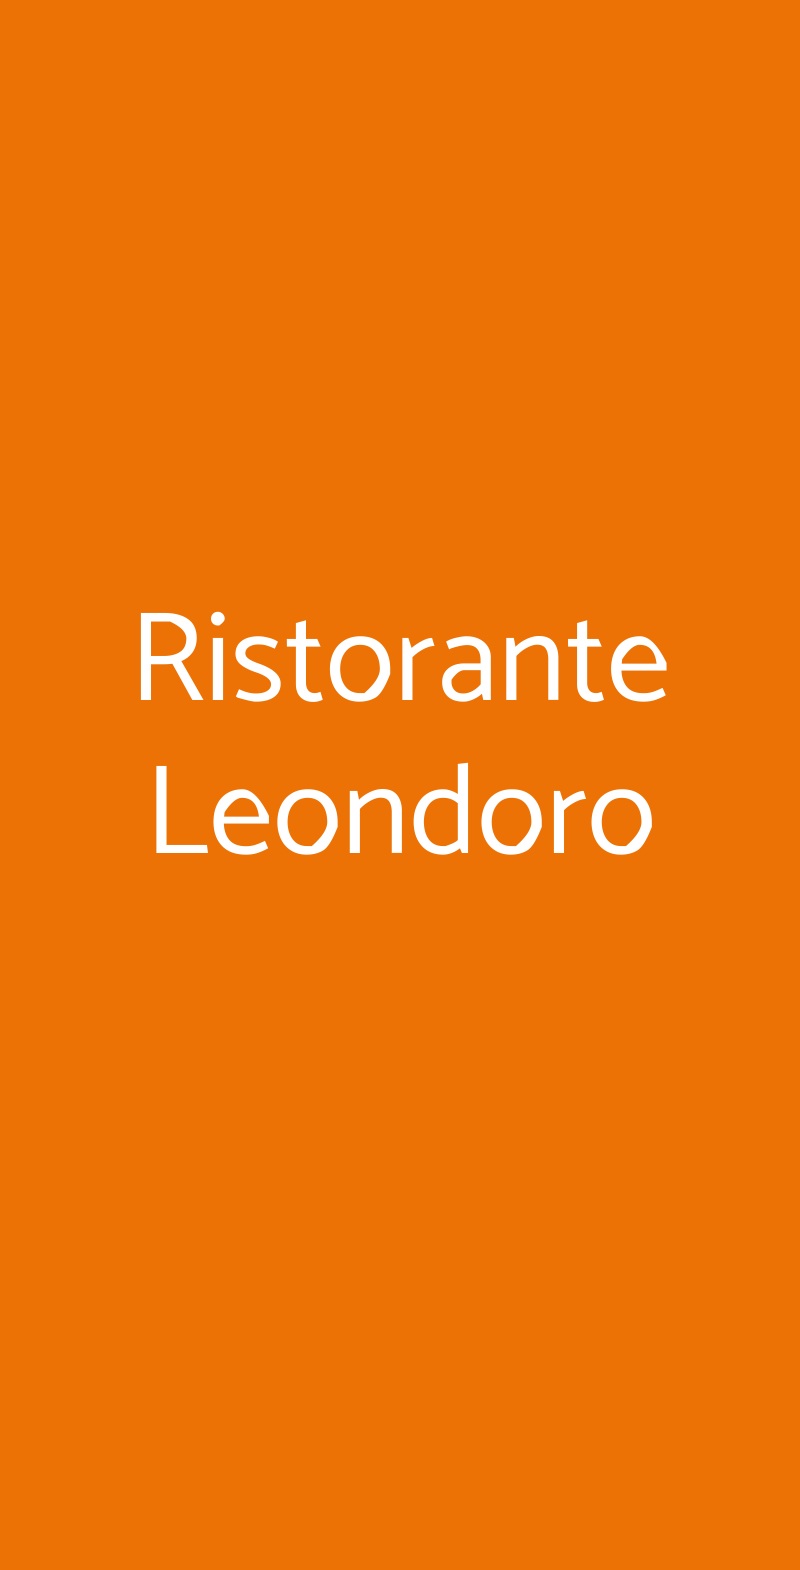 Ristorante Leondoro Montegrotto Terme menù 1 pagina